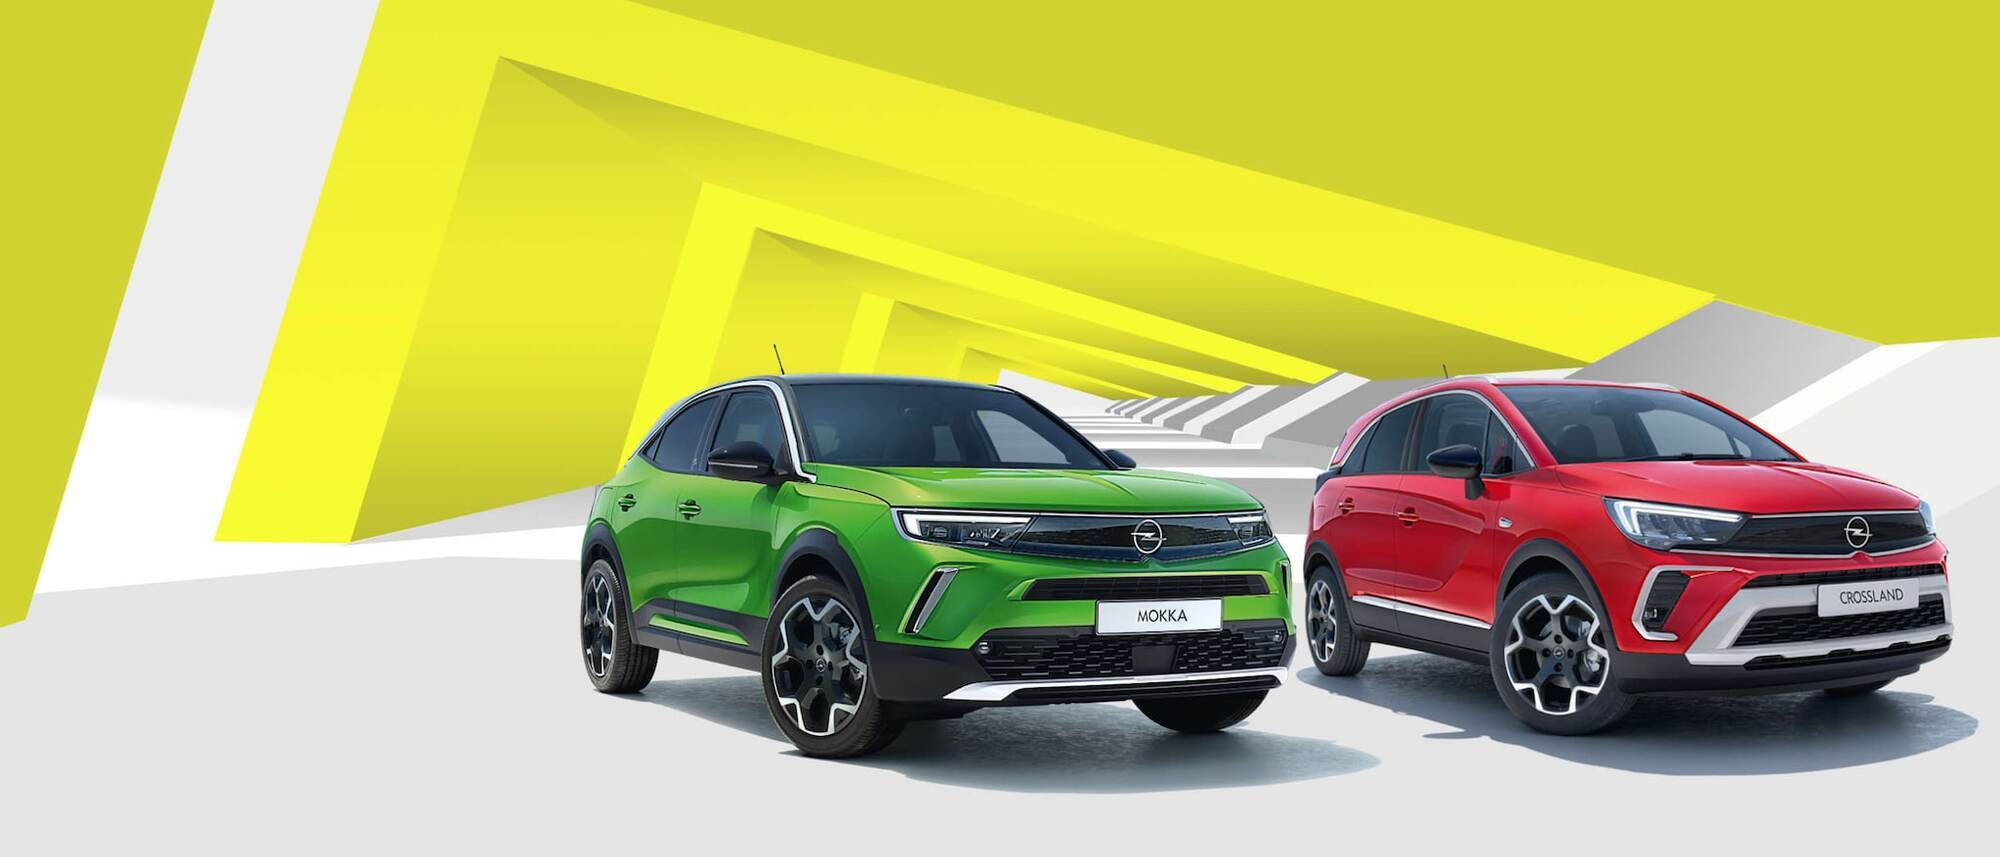 За підсумками січня в Україні було реалізовано 98 автомобілів Opel